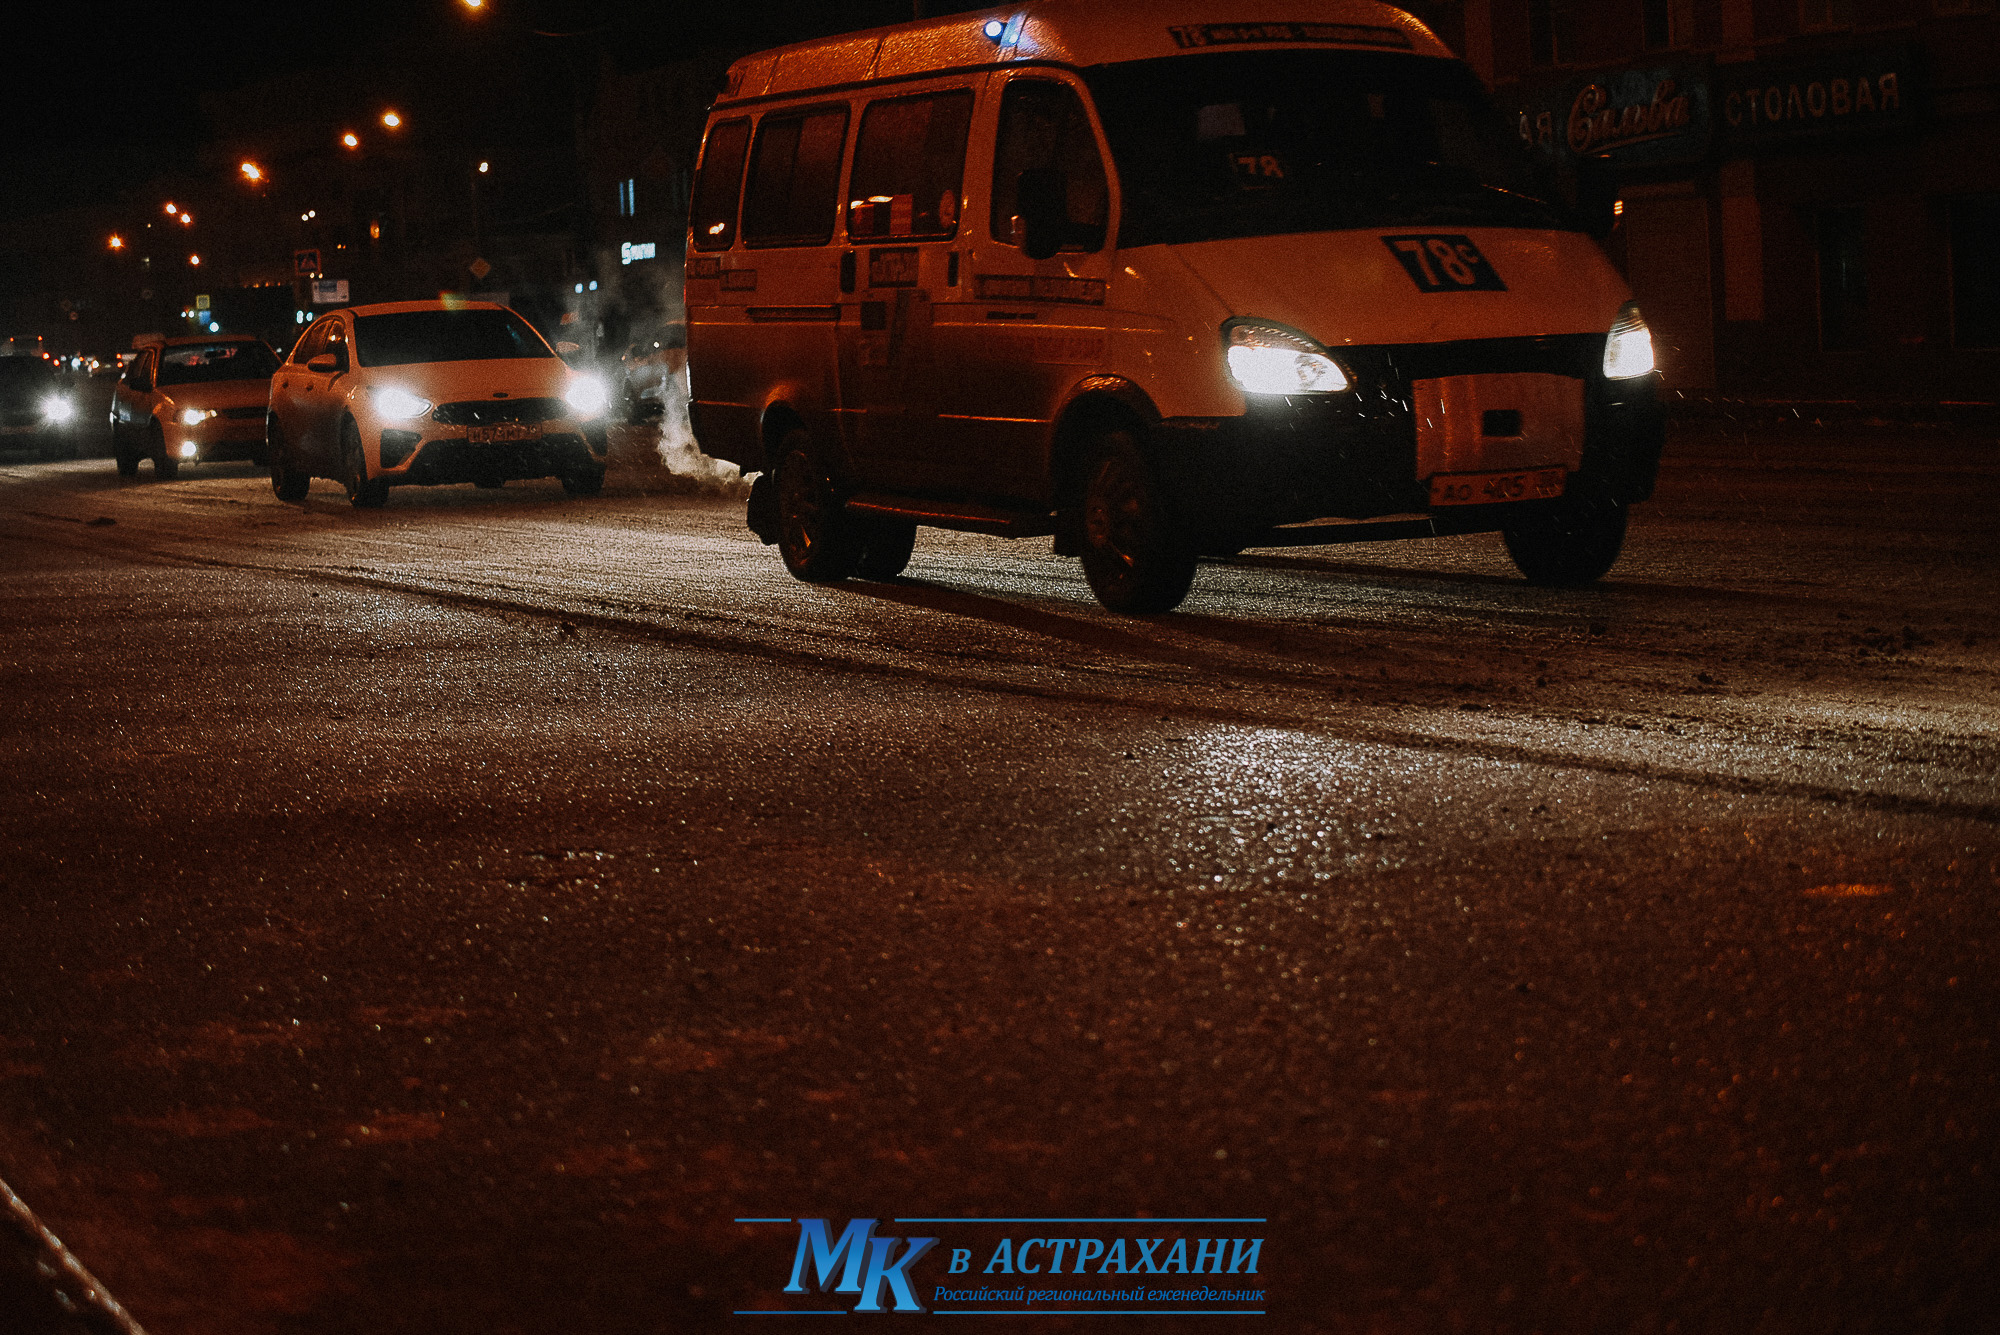 DSC 5803 2 Ледяной дождь в Астрахани глазами фотографа